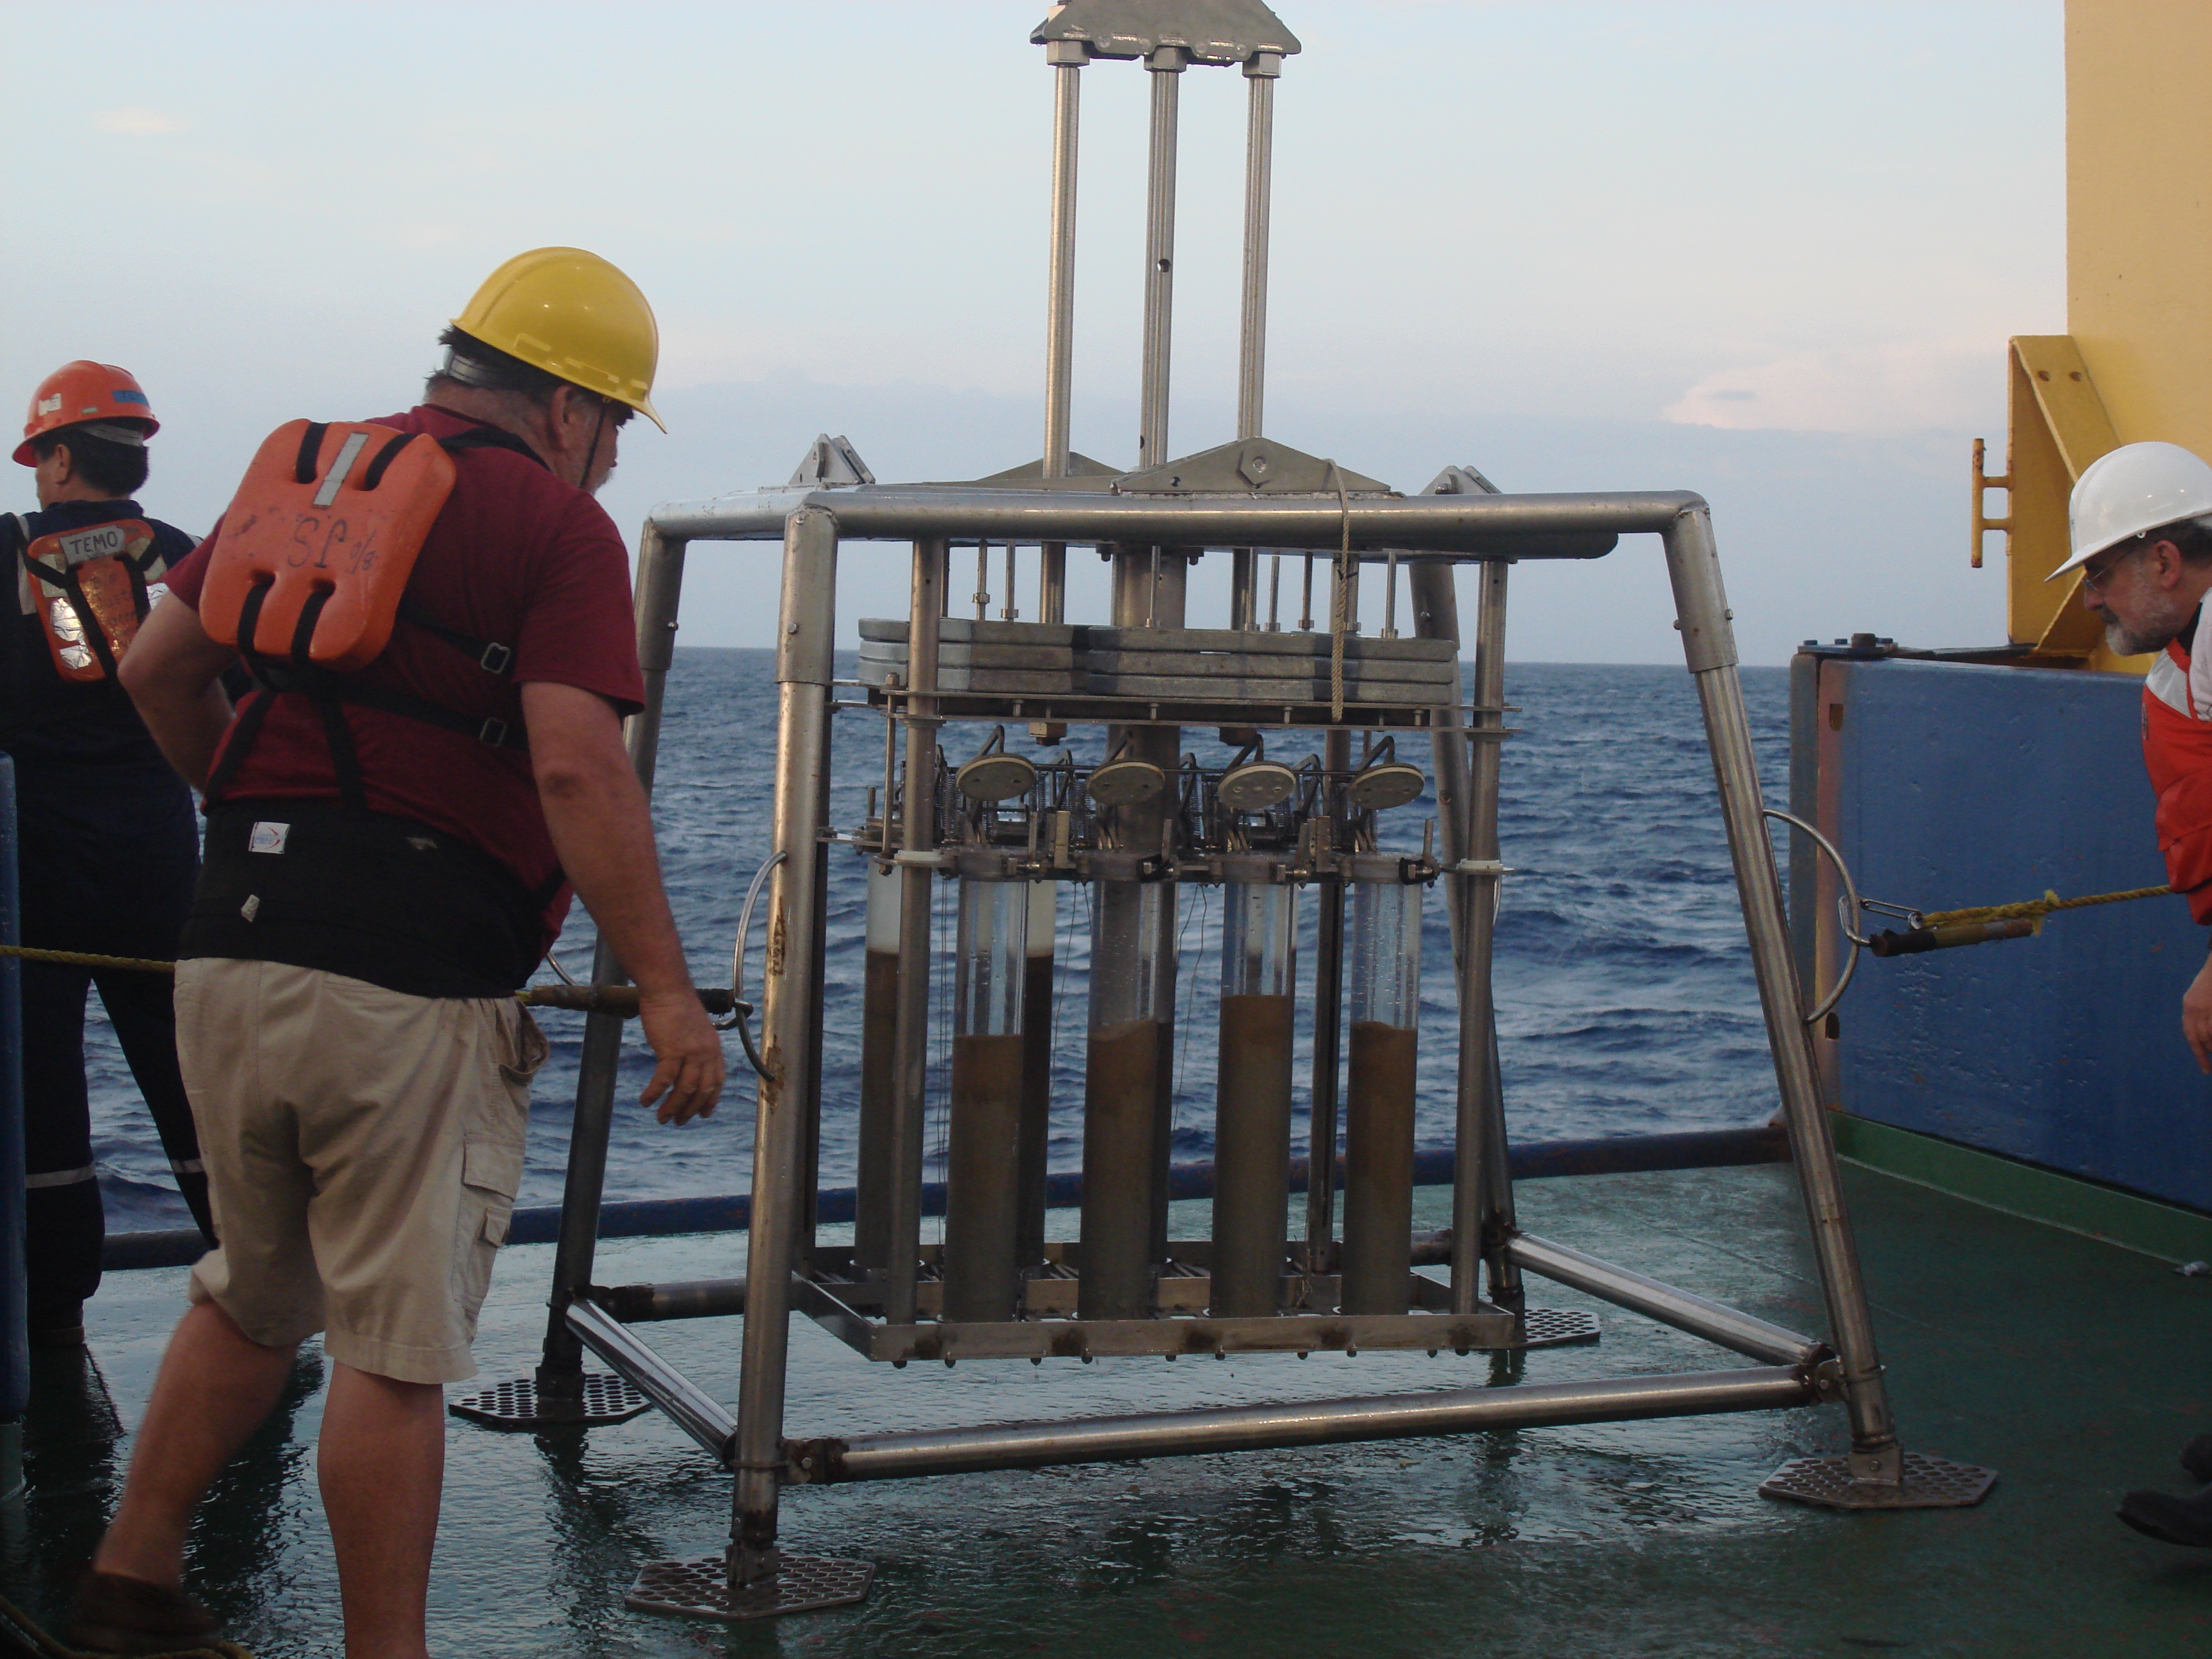 Núcleos de sedimento colectados a 3,500 metros de profundidad en el Golfo de México con restos de hidrocarburos aromáticos polinucleares.